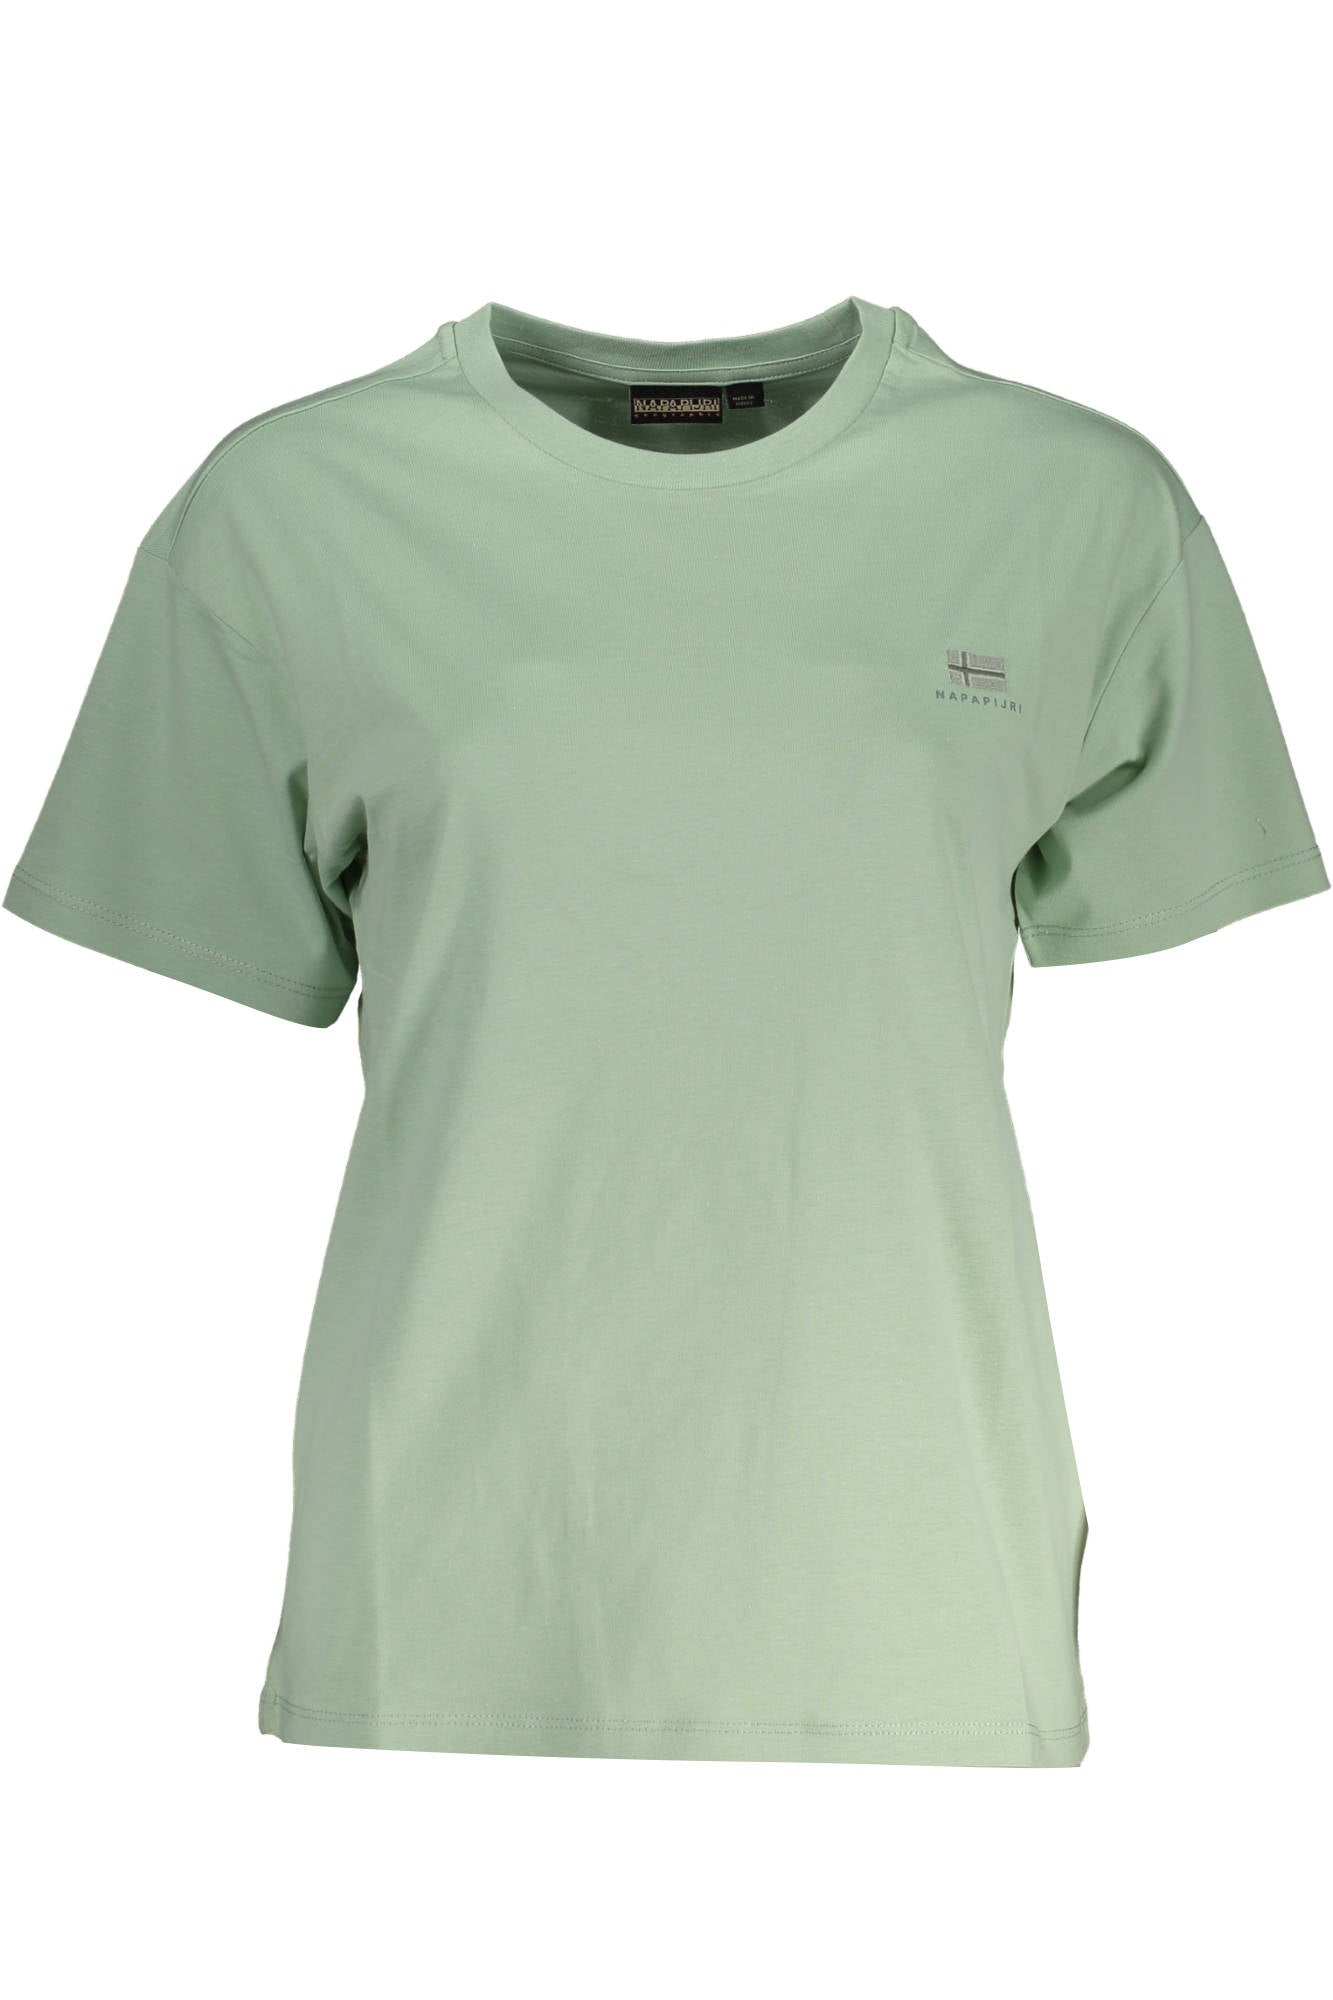 Napapijri Green Cotton Tops & T-Shirt - Fizigo